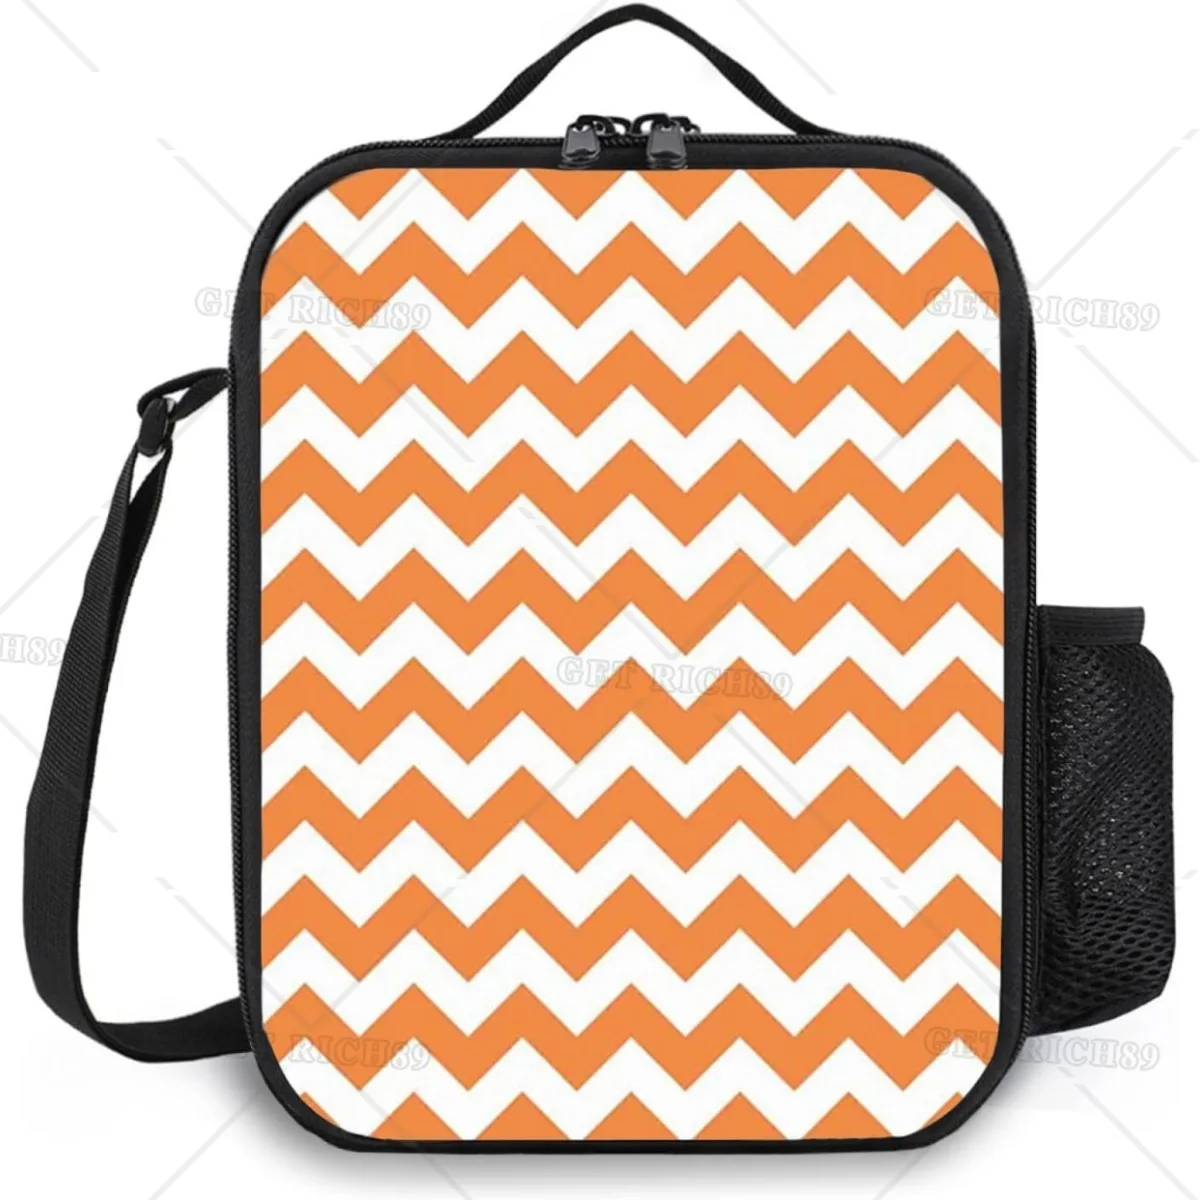 

Изолированная обеденная сумка с шевроном для взрослых мужчин и женщин, прочная многоразовая оранжево-белая сумка для ланча, сумка-тоут с карманом для рабочего путешествия